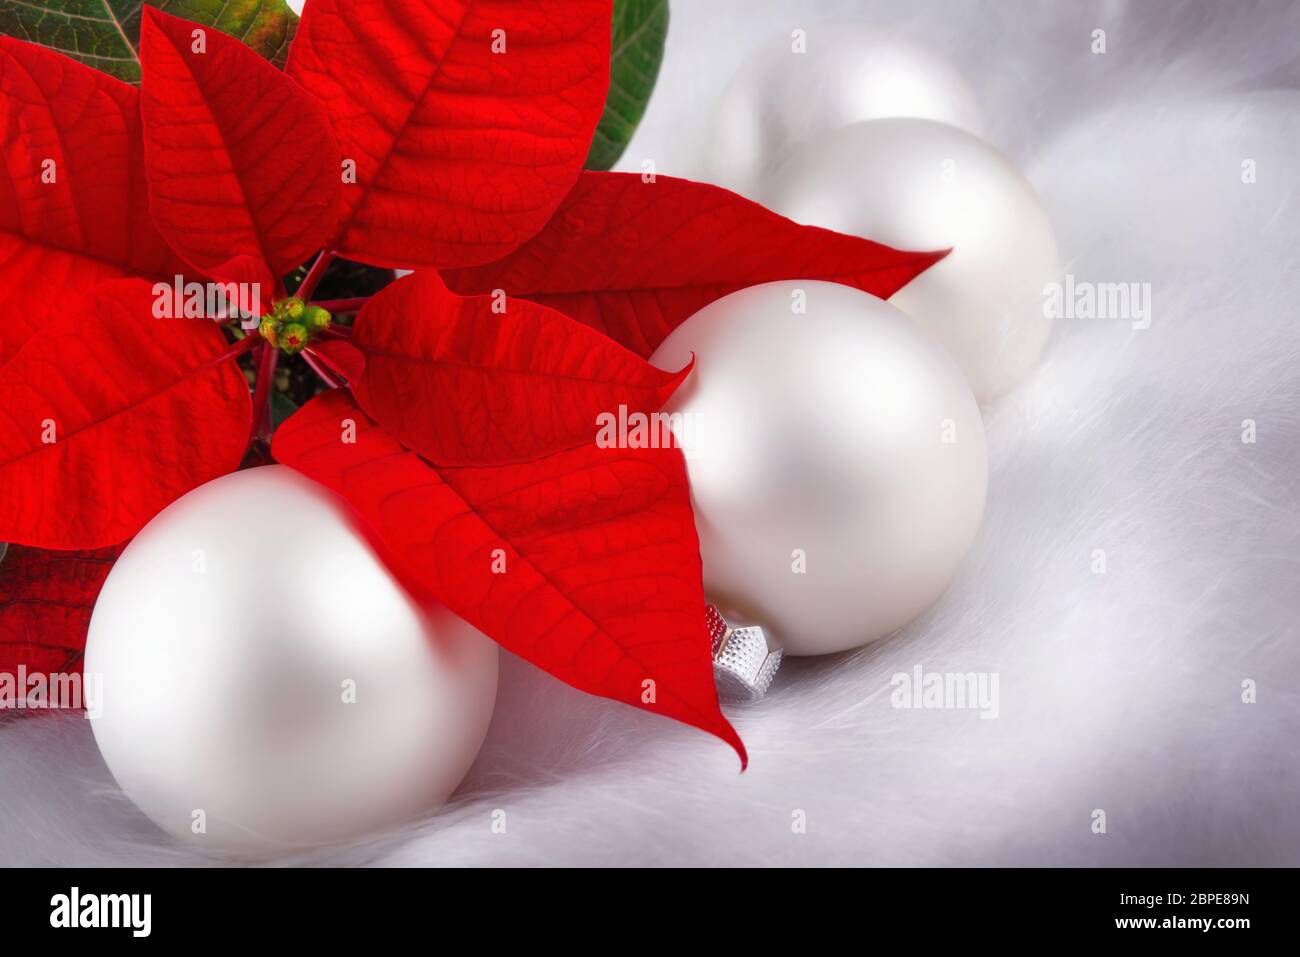 Elegantes weihnachtliches disposizione mit rotem Weihnachtsstern, Engelshaar und weißen Kugeln Foto Stock